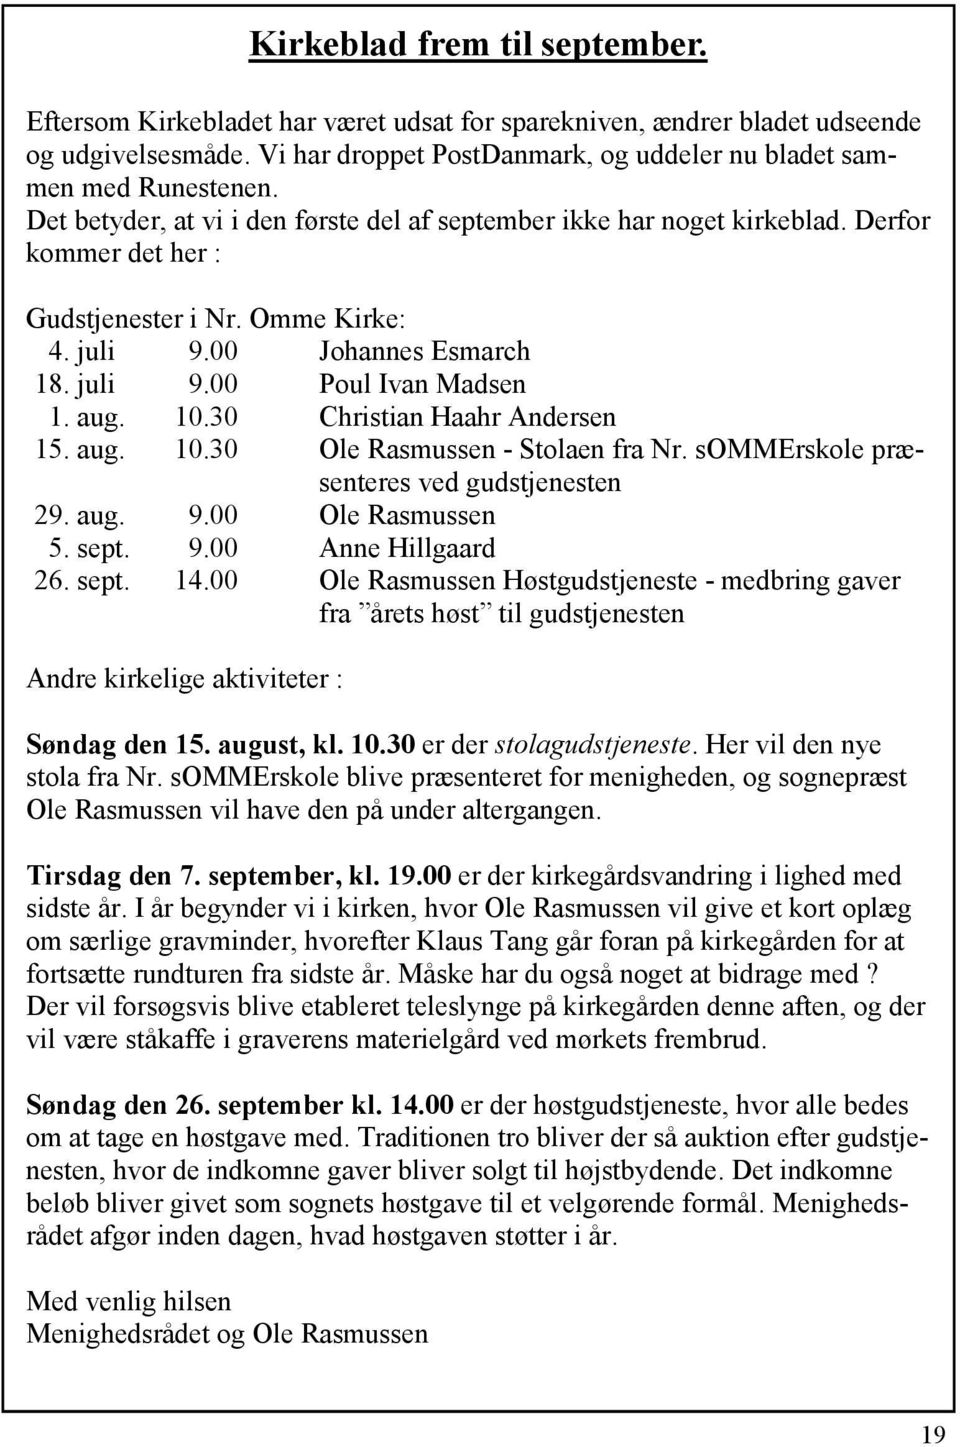 10.30 Christian Haahr Andersen 15. aug. 10.30 Ole Rasmussen - Stolaen fra Nr. sommerskole præsenteres ved gudstjenesten 29. aug. 9.00 Ole Rasmussen 5. sept. 9.00 Anne Hillgaard 26. sept. 14.